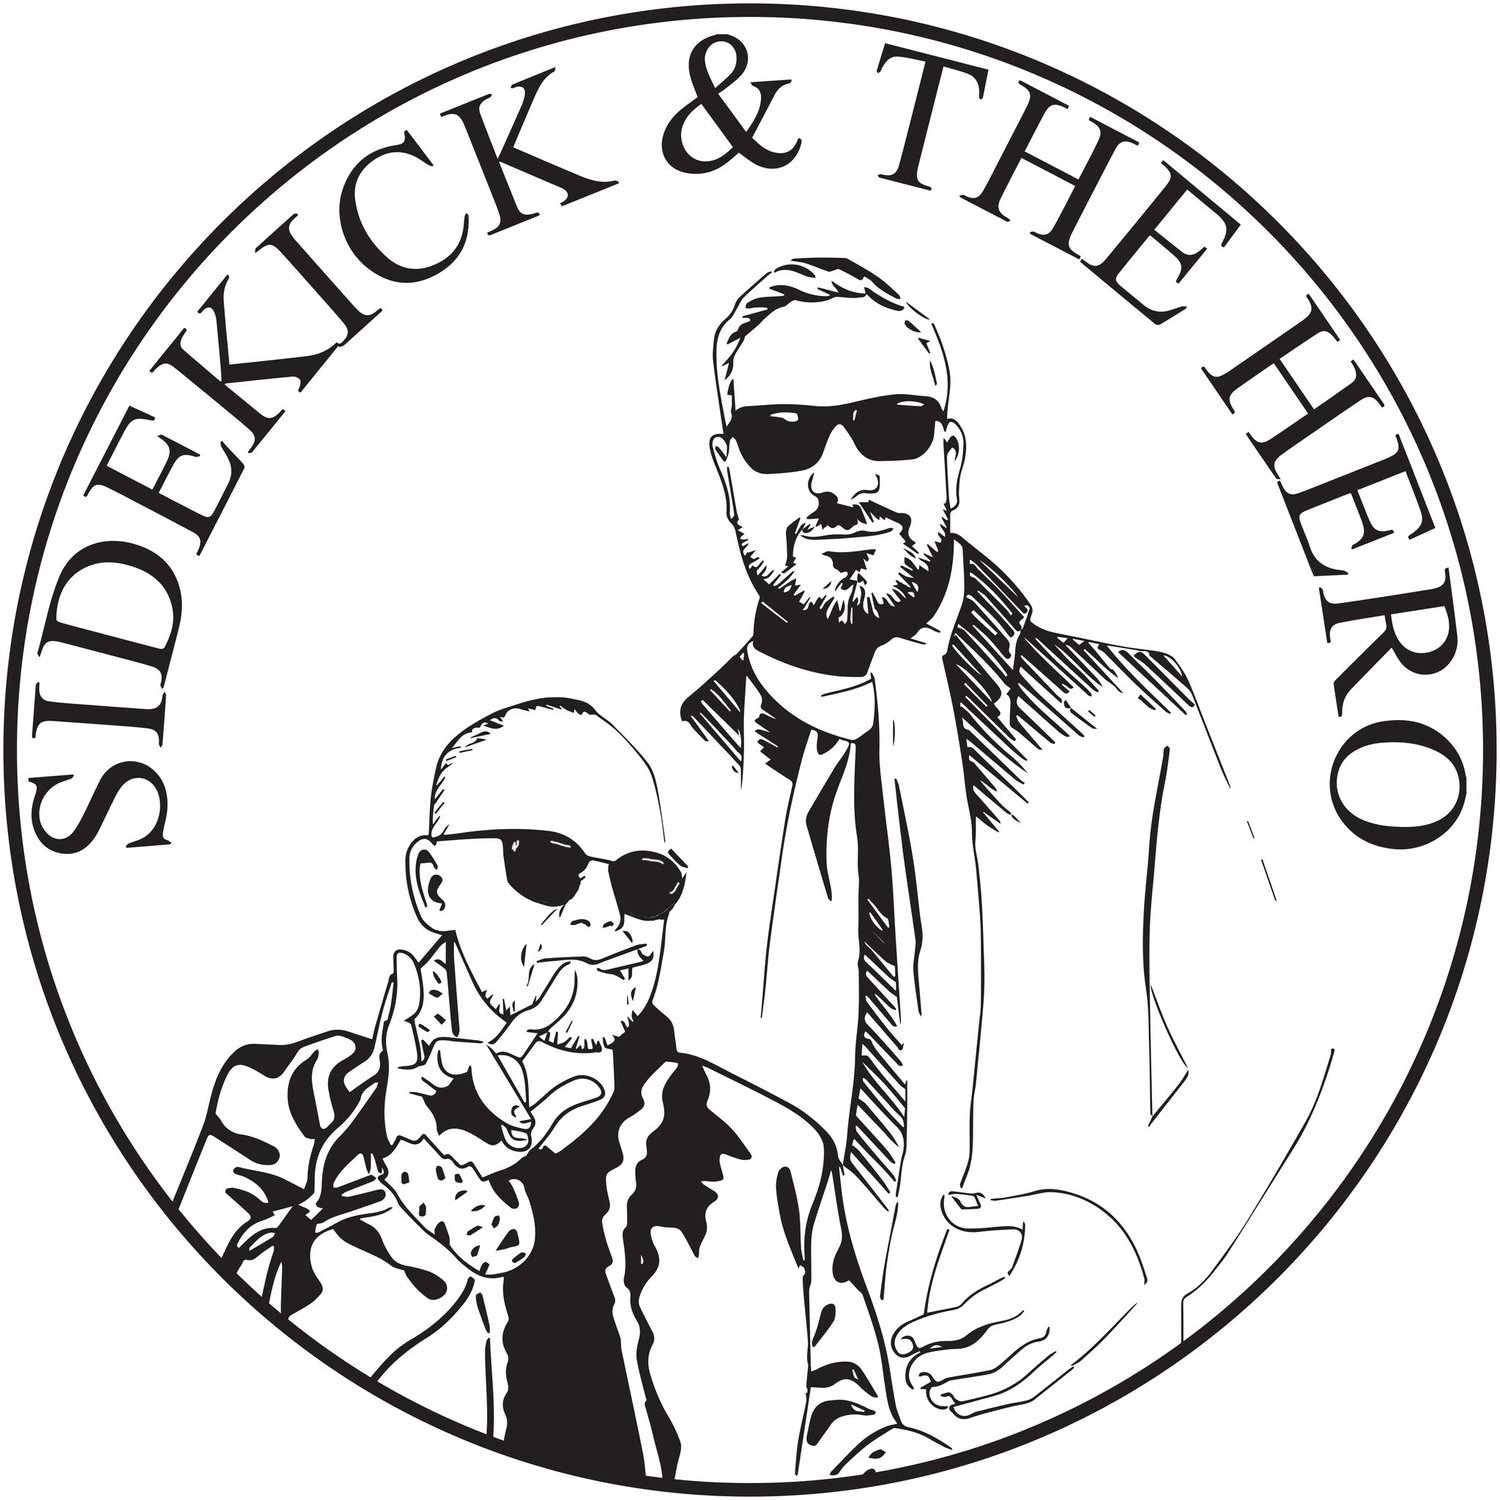 Sidekick and The Hero